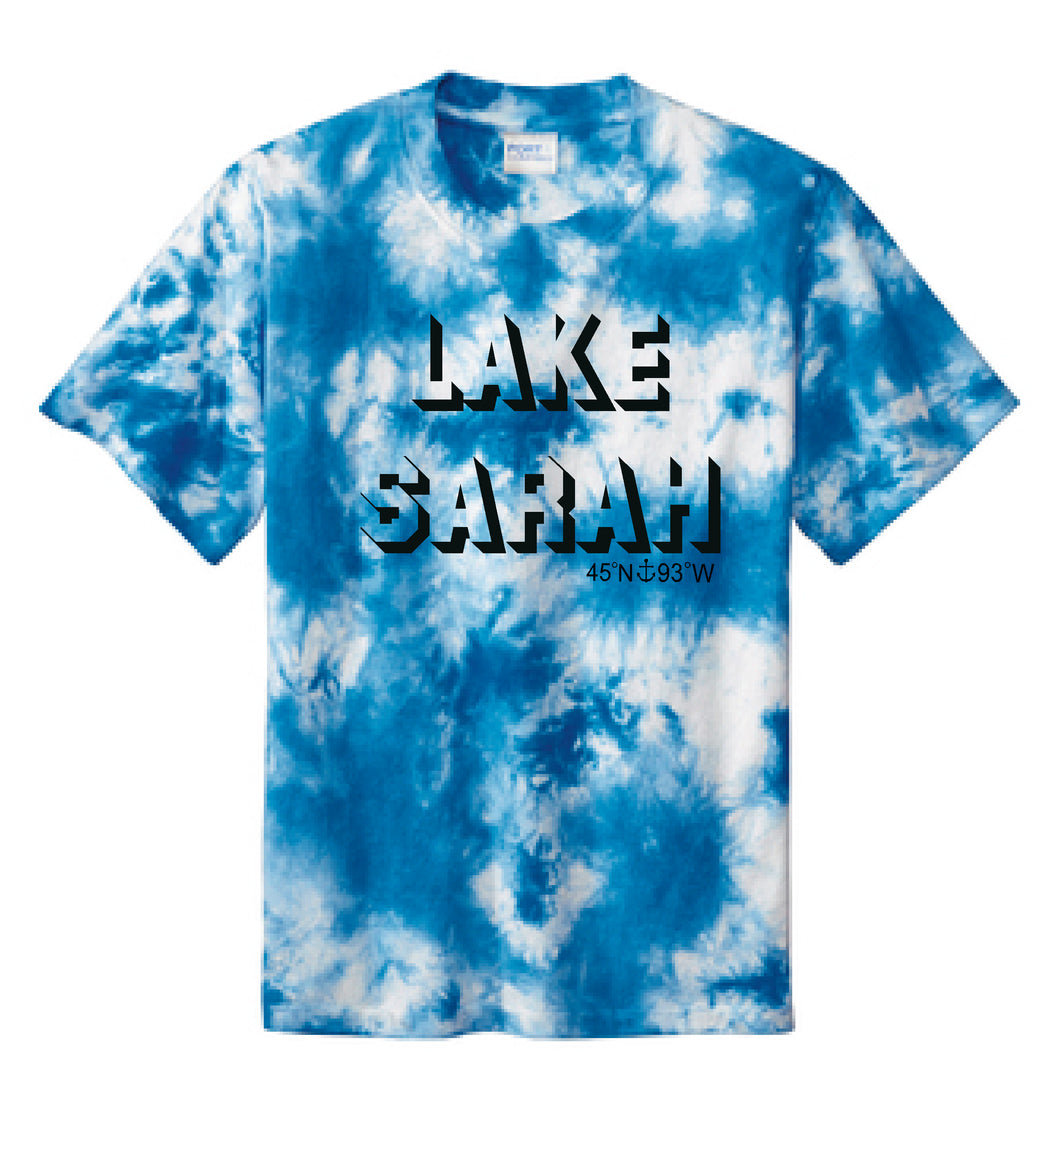 Lake Sarah or Lake Shetek Blue Crystal Tie Dye Tee